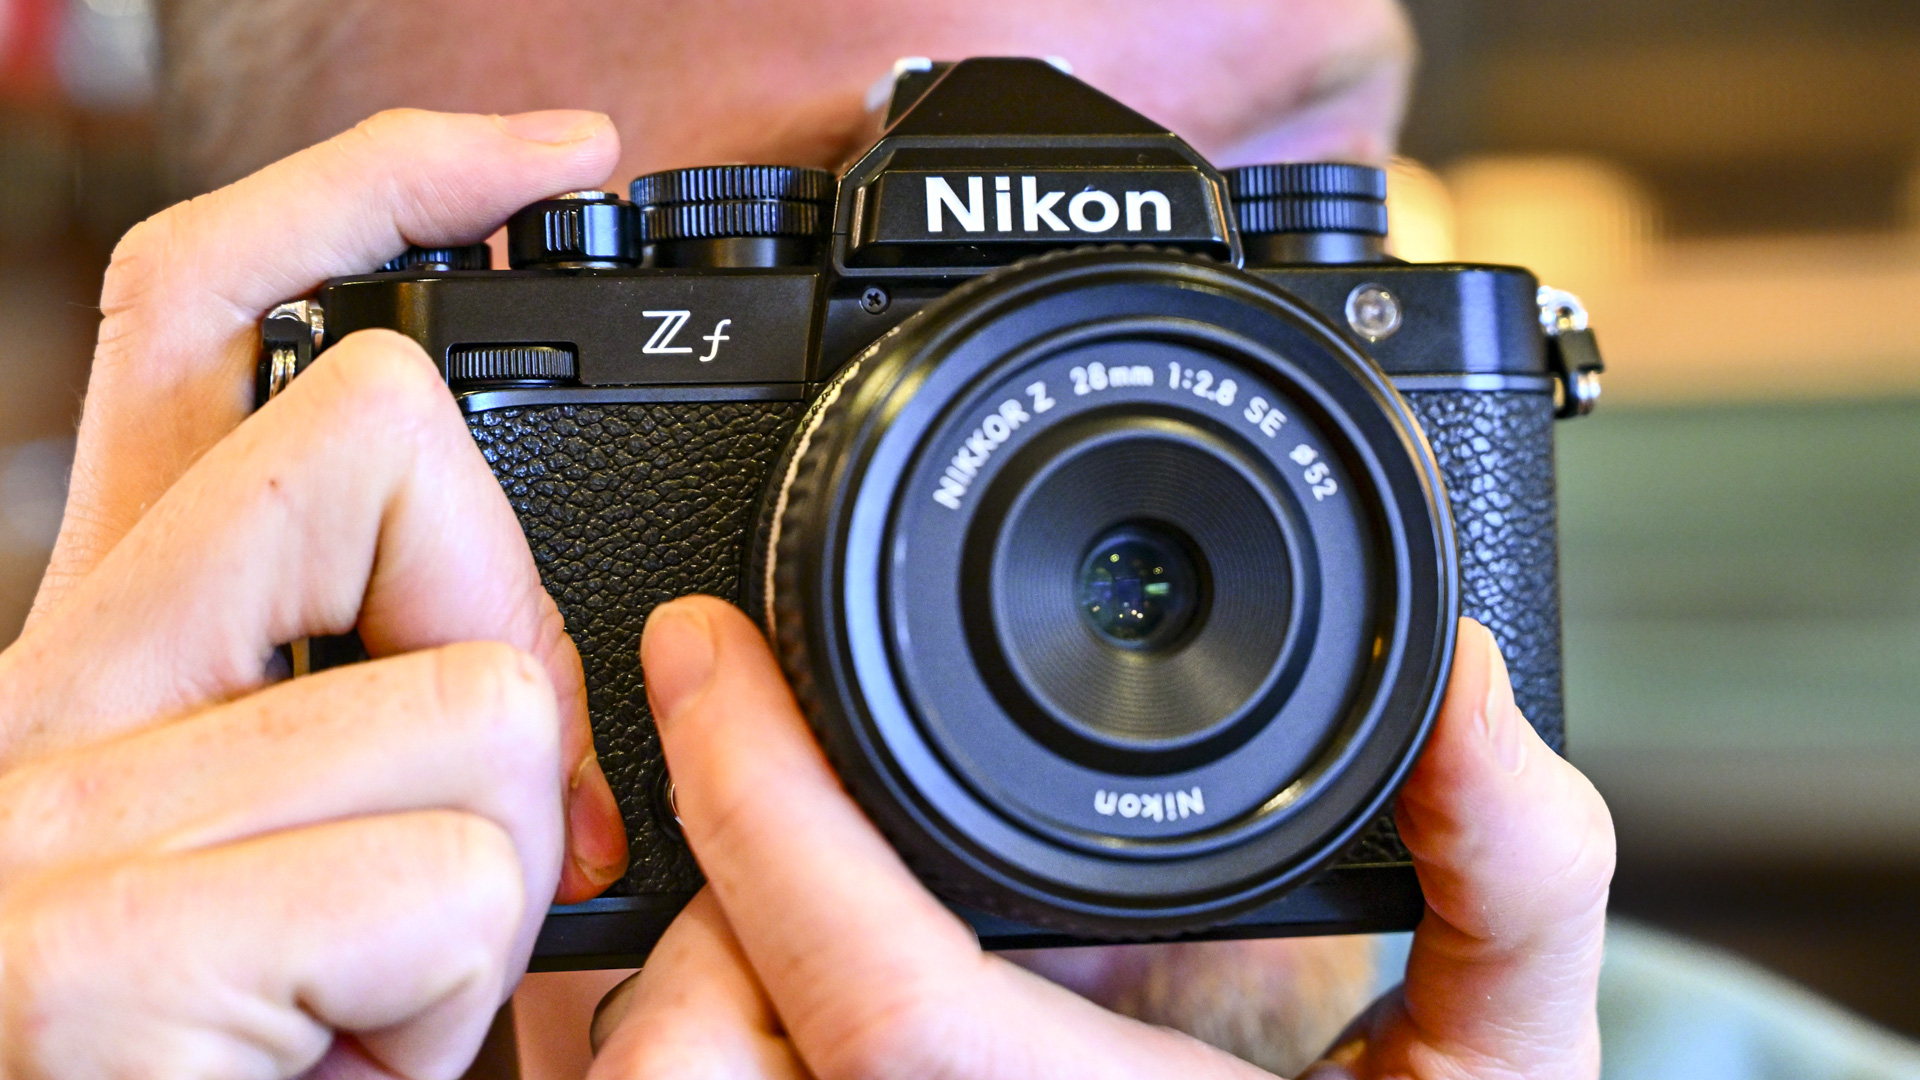 Appareil photo Nikon Zf tenu devant l'œil du photographe utilisant le viseur, avec l'objectif Z 28mm F2.8 SE monté